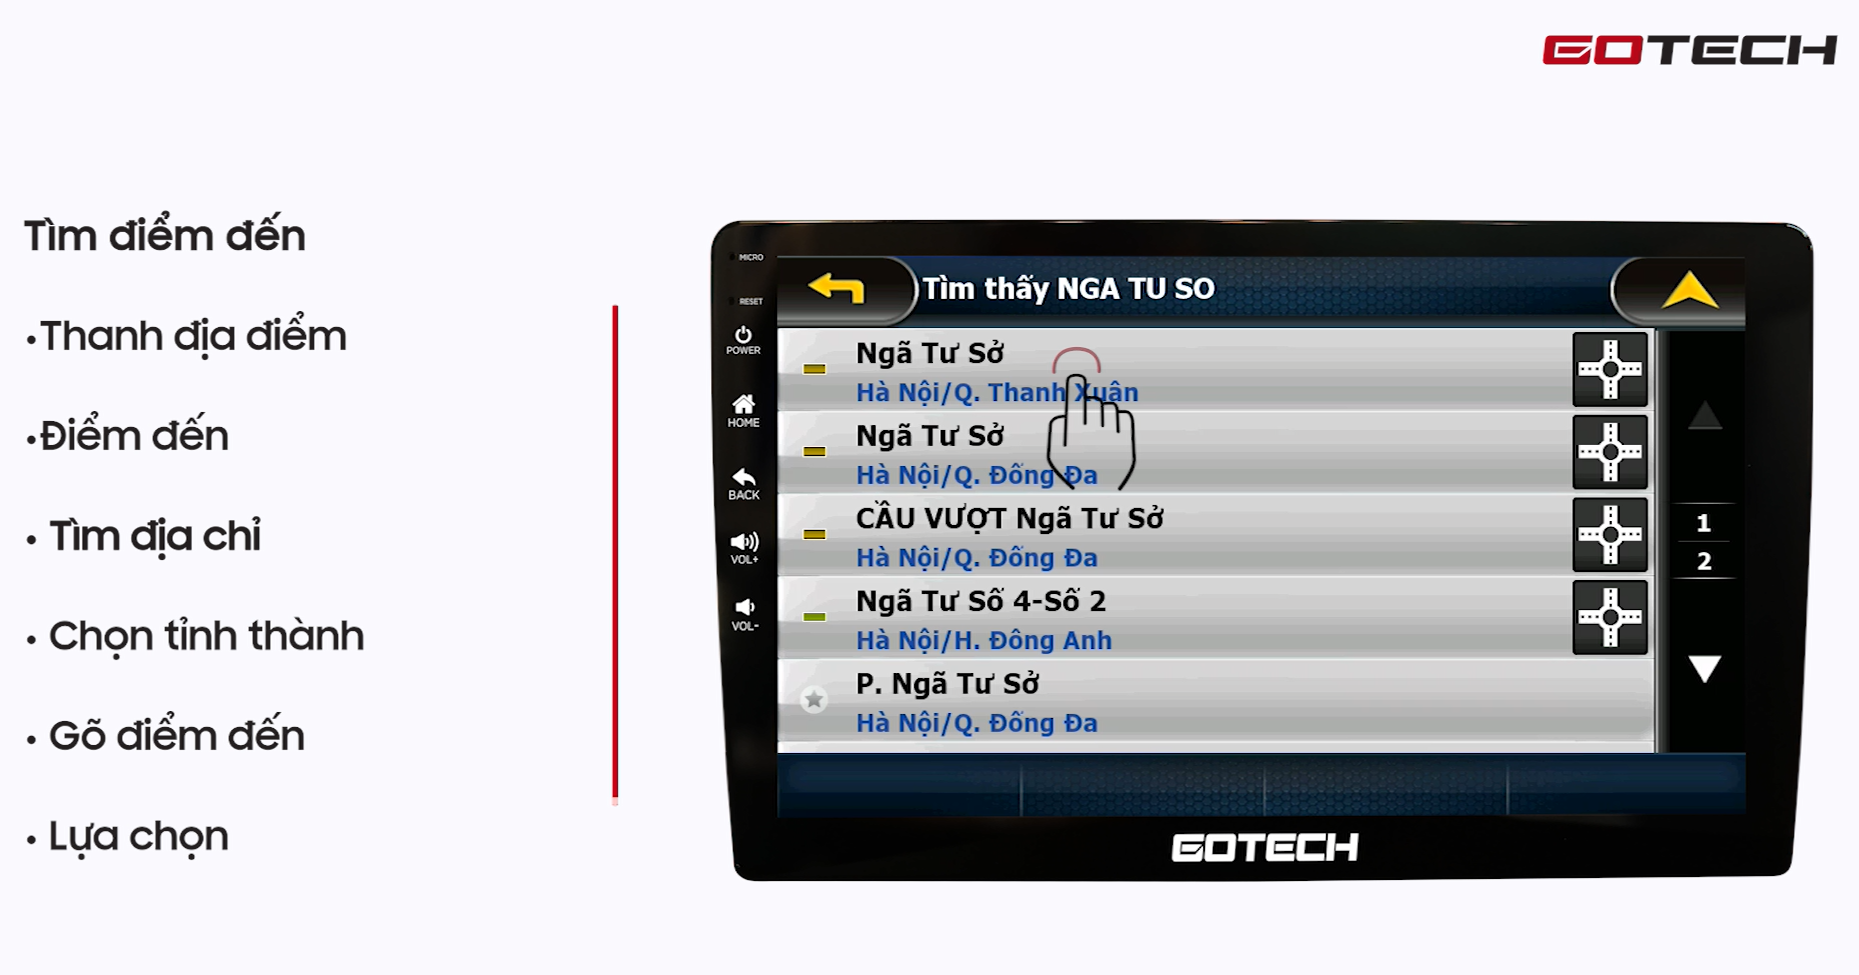 Hướng dẫn sử dụng Vietmap S1 trên màn hình Gotech